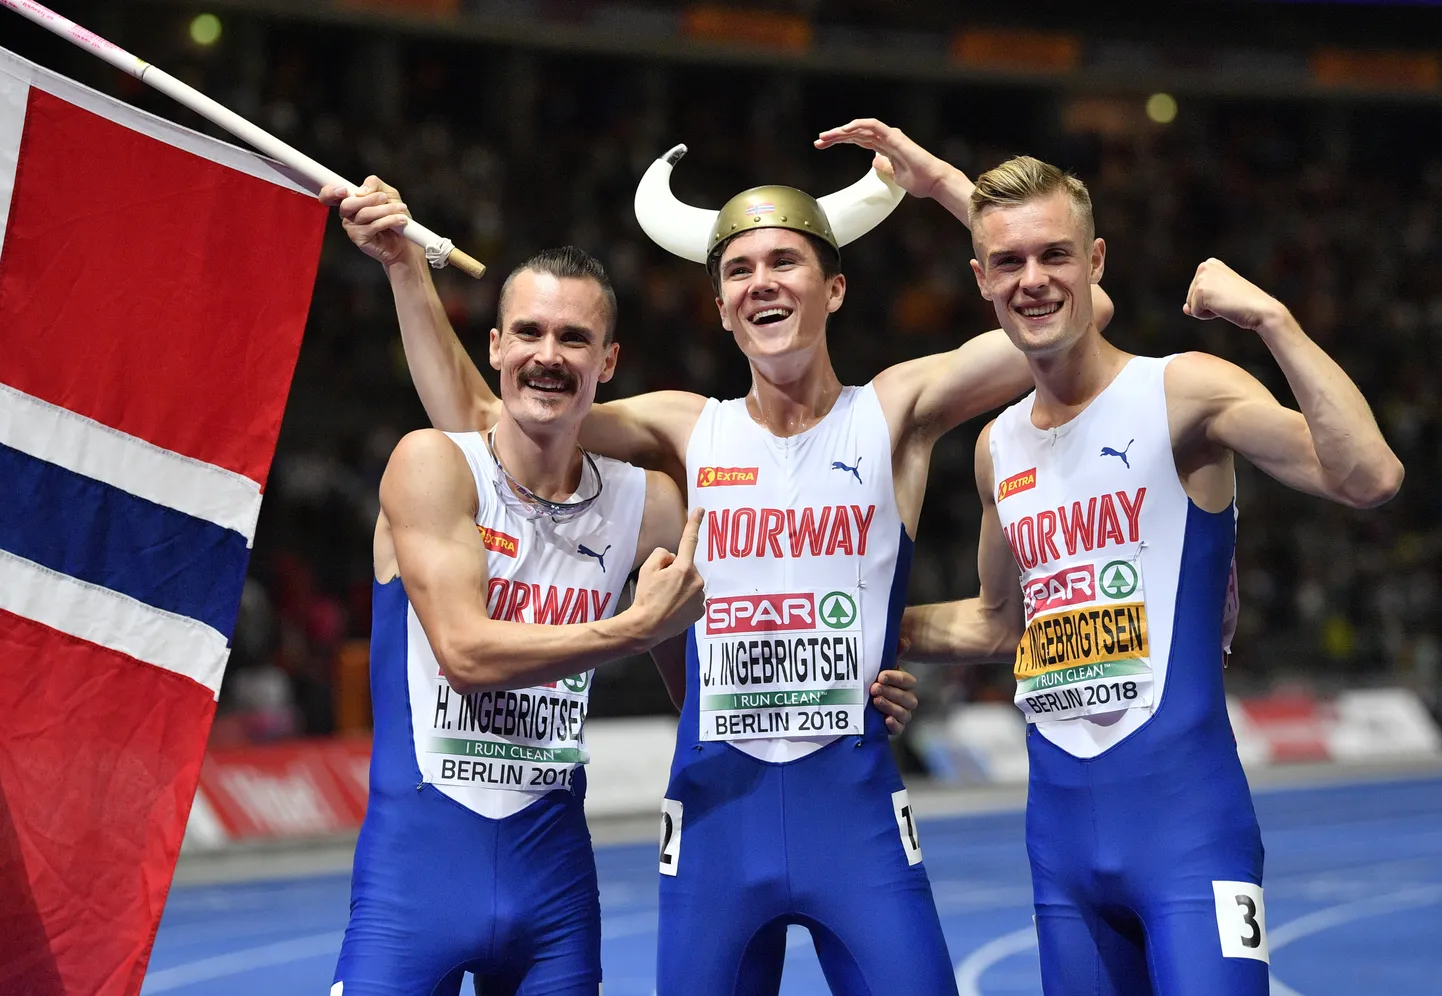 Berliini EMi võitis 1500 meetri kulla Jakob Ingebrigtsen (keskel), vasakul Henrik Ingebrigtsen ja paremal Filip Ingebrigtsen.